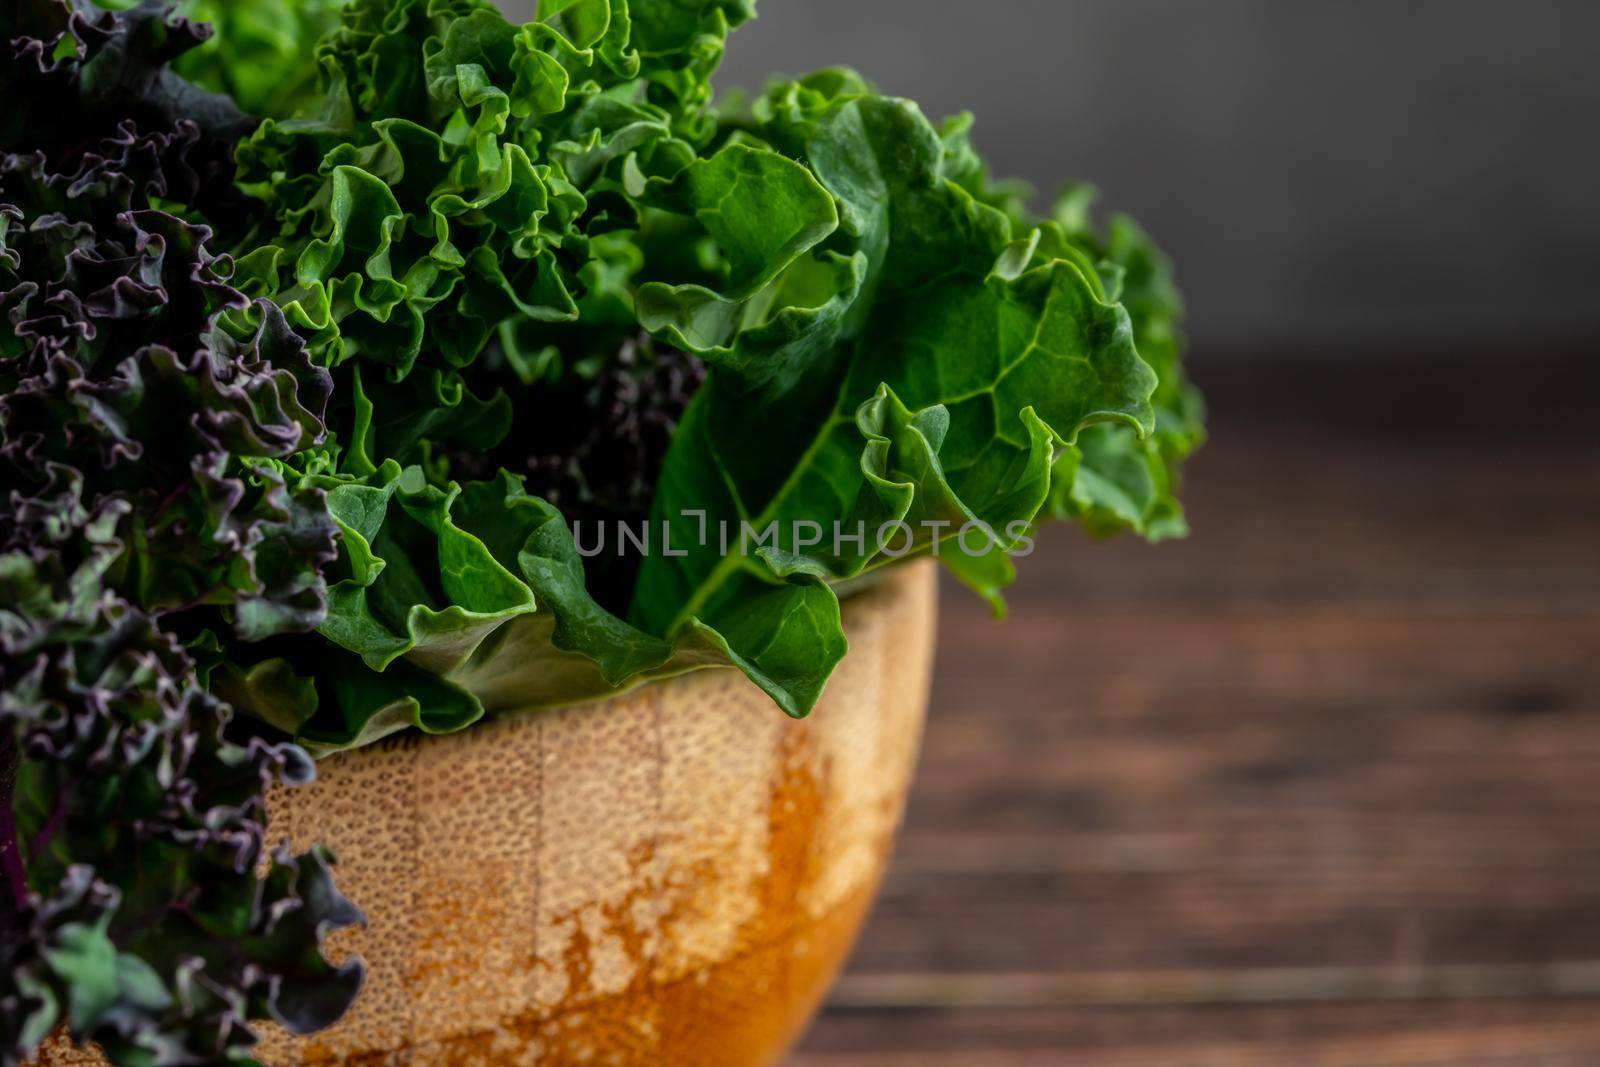 green leafy kale by Sonat